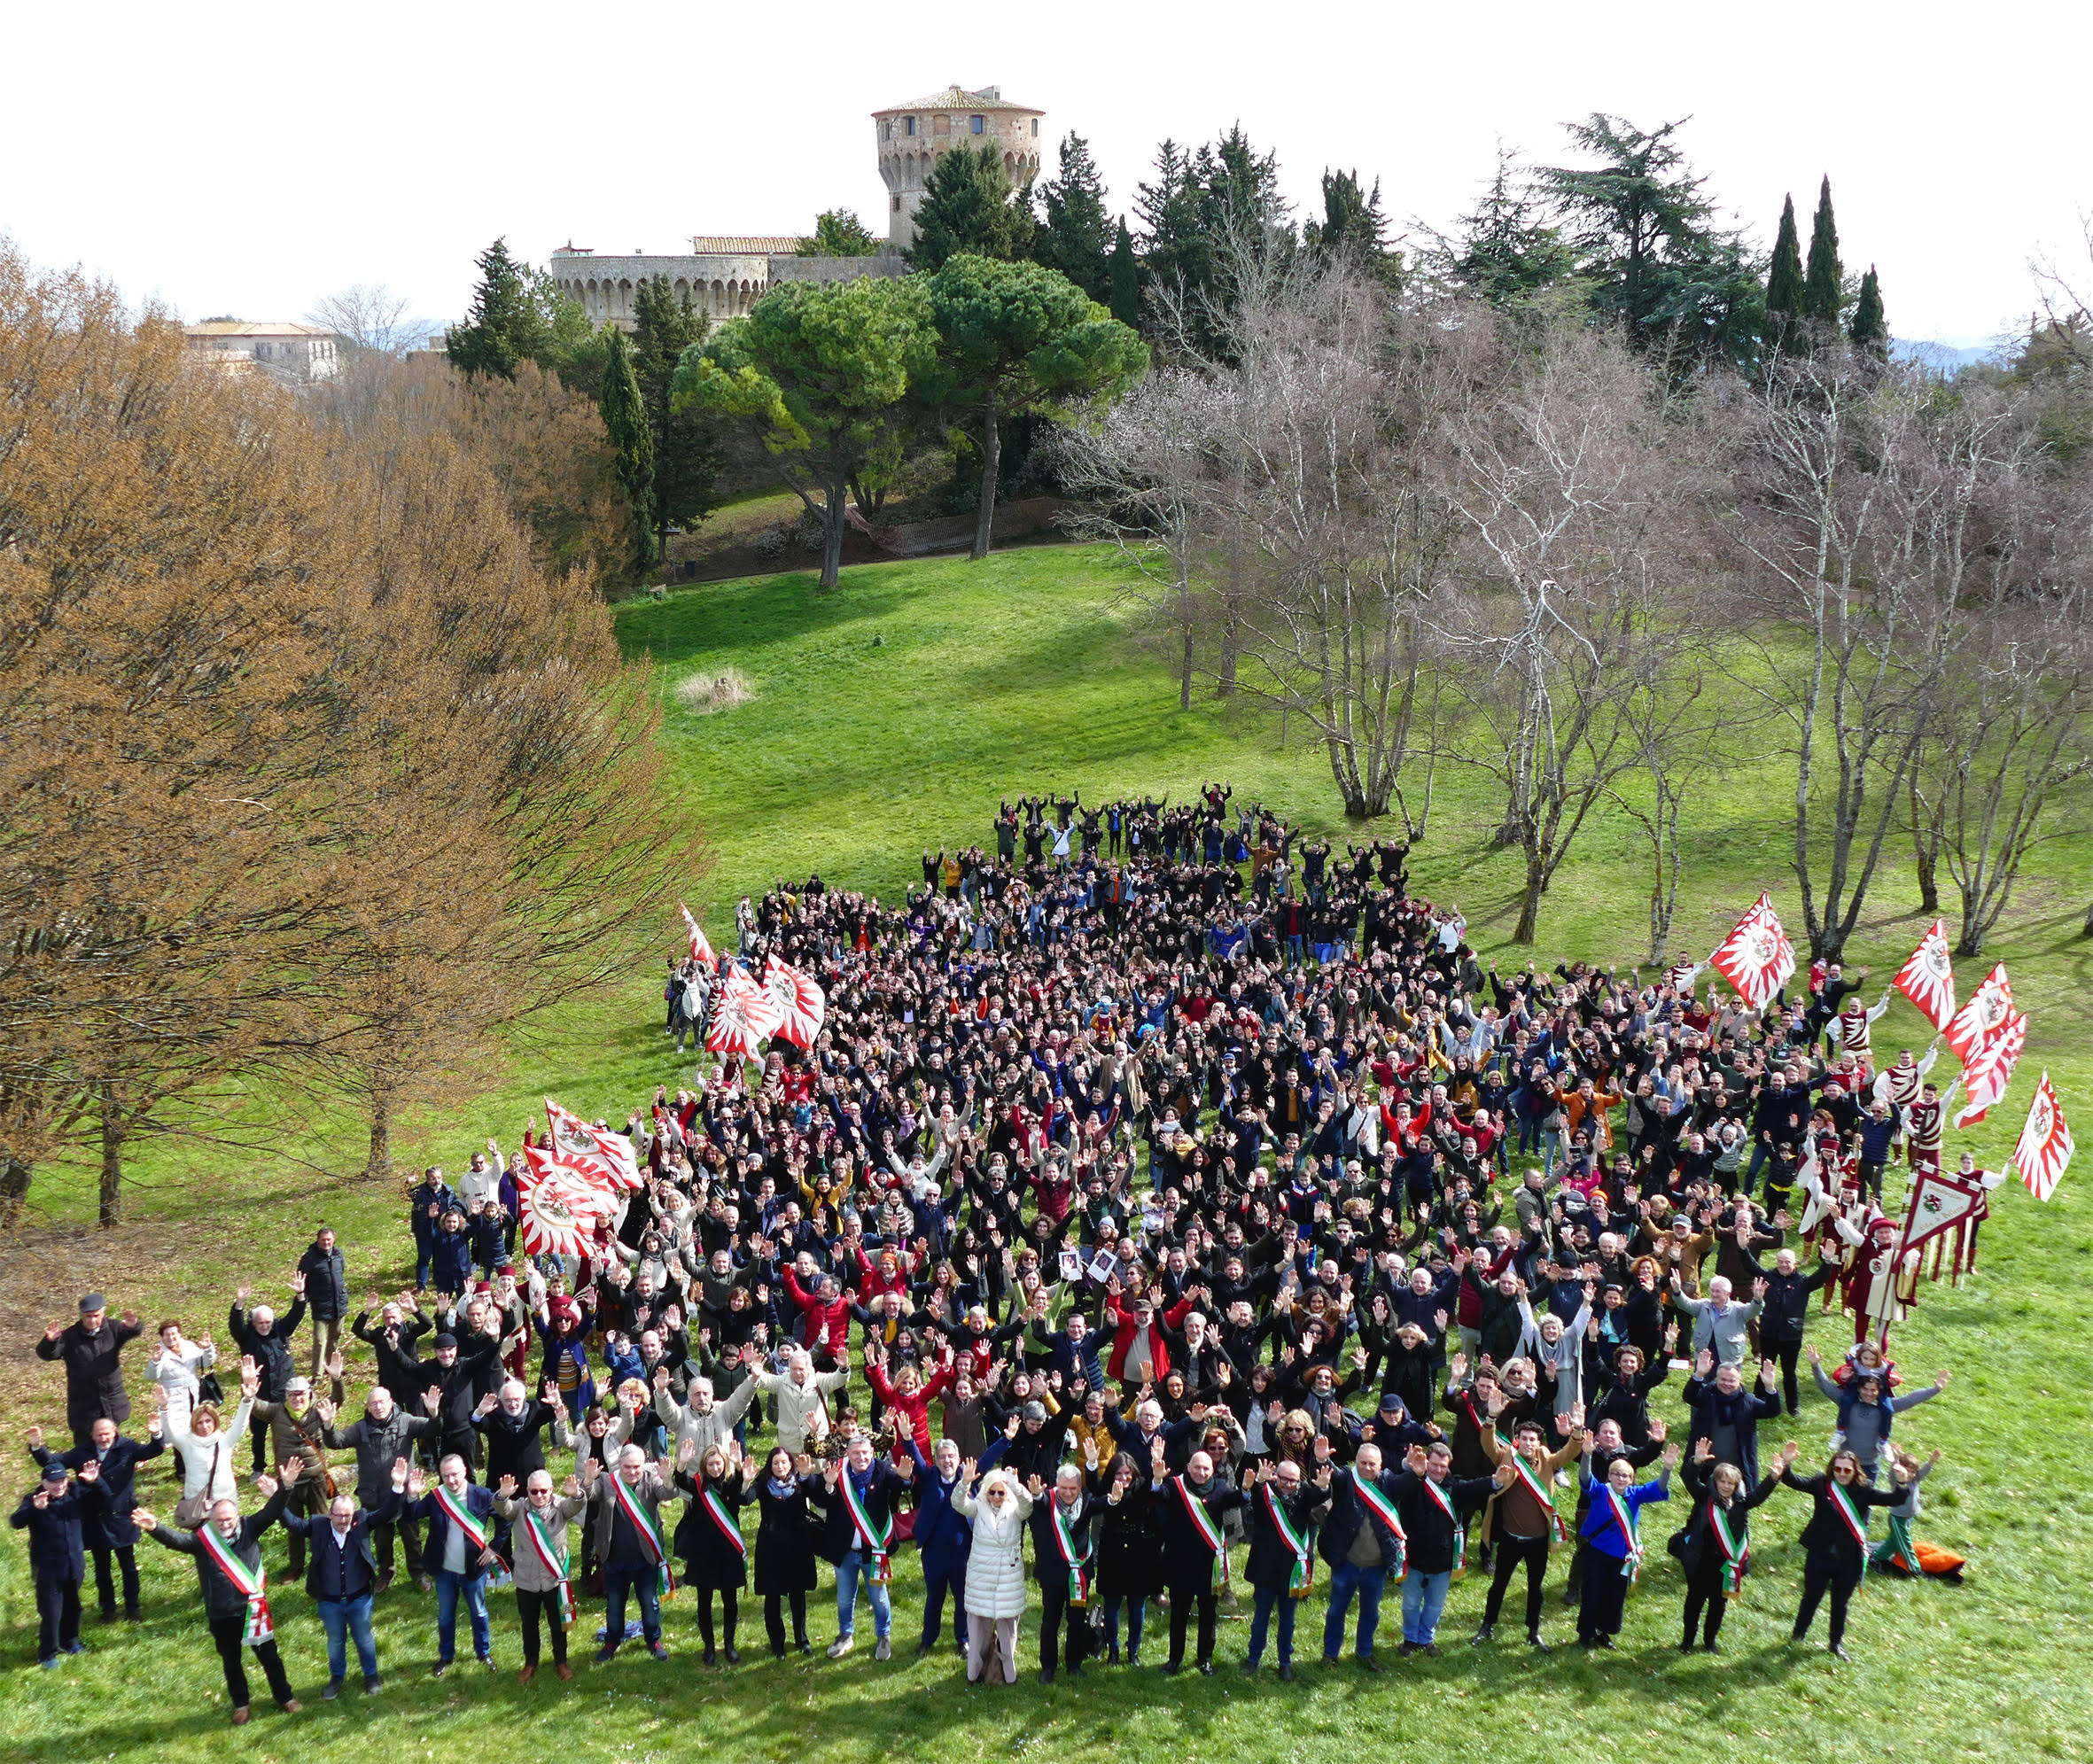 NEWS / Volterra 2021: mille persone per festeggiare la candidatura! Braccia levate per la foto-simbolo del dossier che sarà consegnato al MiBACT il 13 marzo.